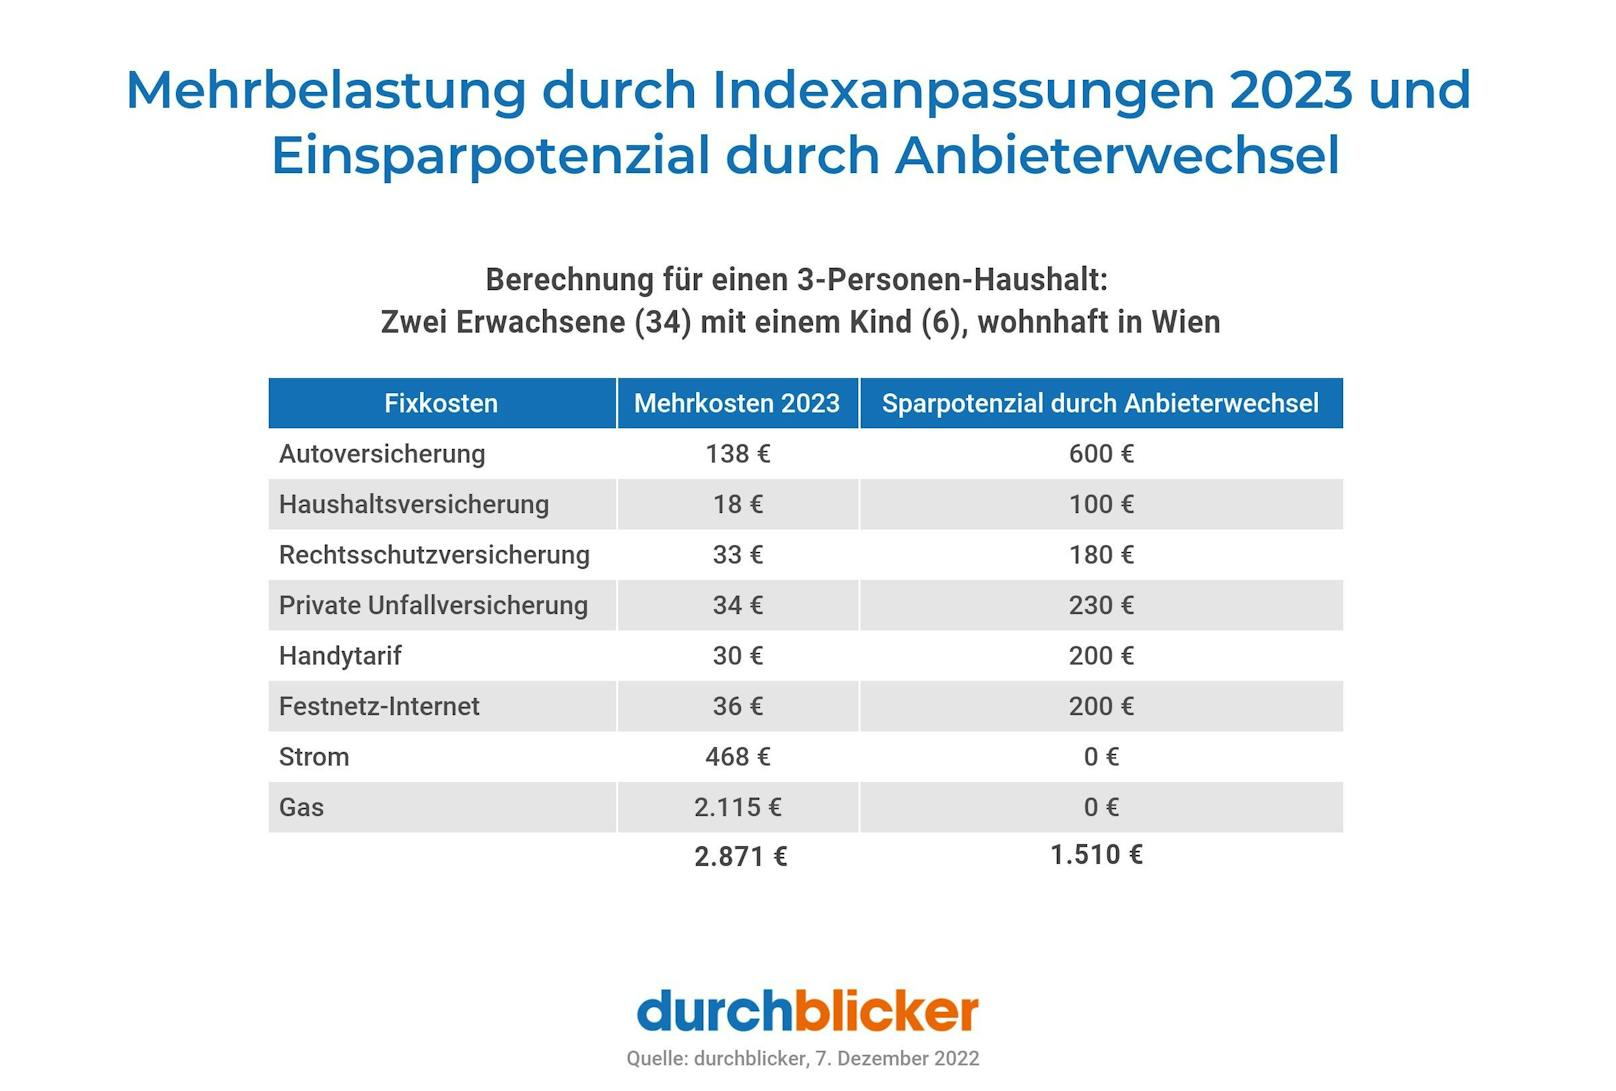 durchblicker: Durchschnittshaushalt erwartet 2.800 Euro Mehrbelastung durch steigende Fixkosten 2023